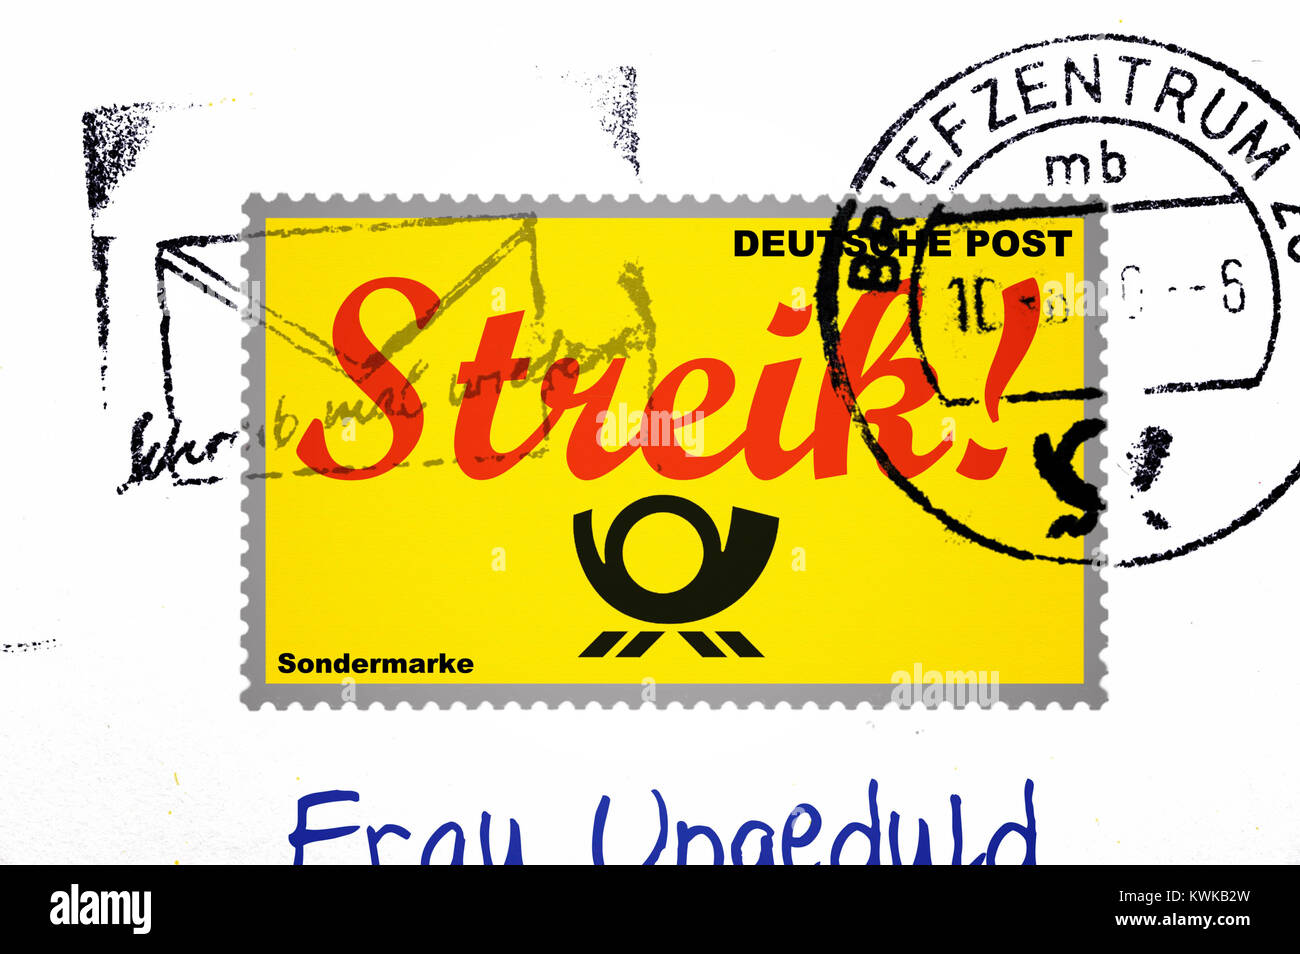 Mit Streik Schlaganfall Stempel, symbolische Foto Poststreik, Briefmarke mit Streik-Schriftzug, Symbolfoto Post-Streik Stockfoto